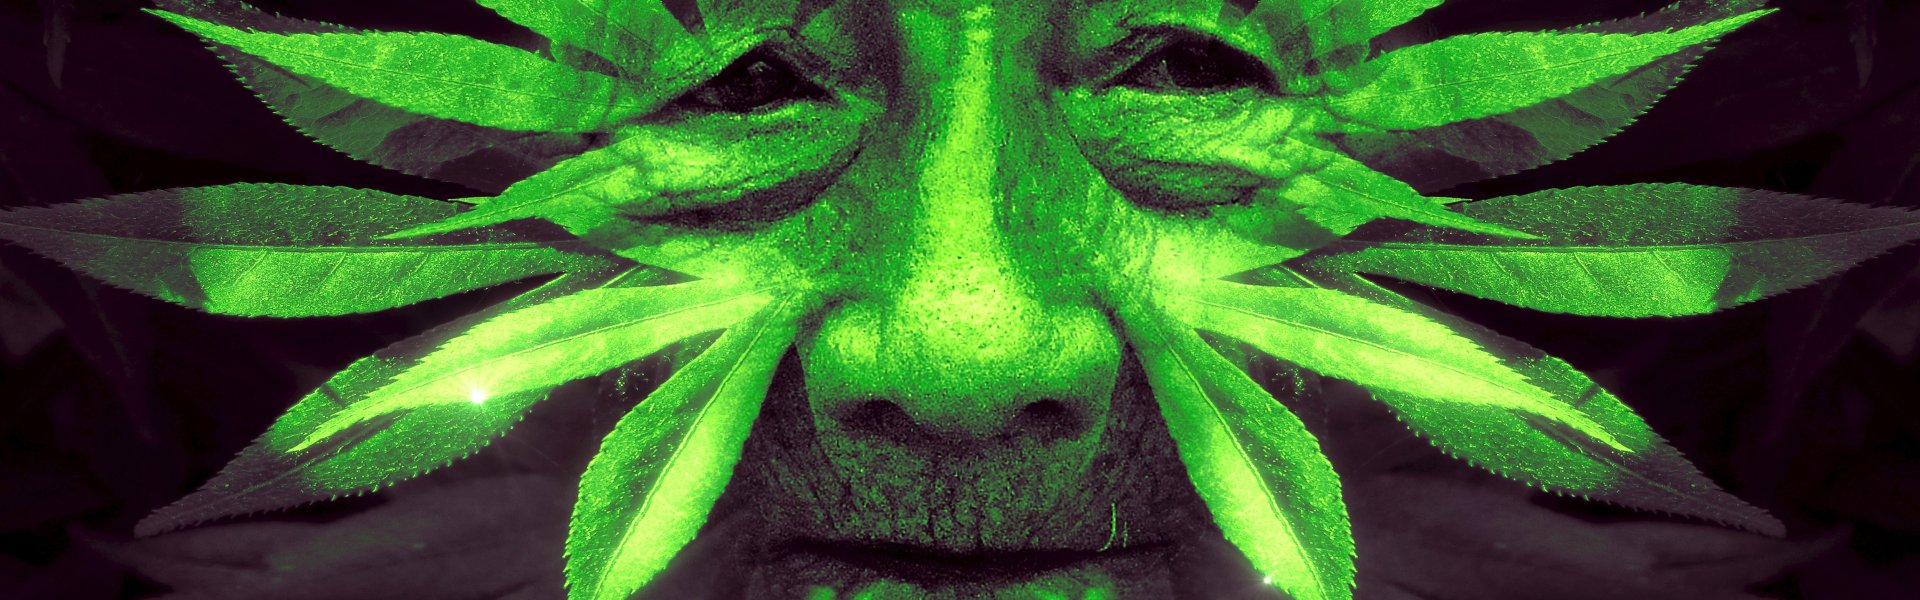 Groen fantasie gezicht van bladeren - cc KELLEPICS pixabay fantasy 3340888